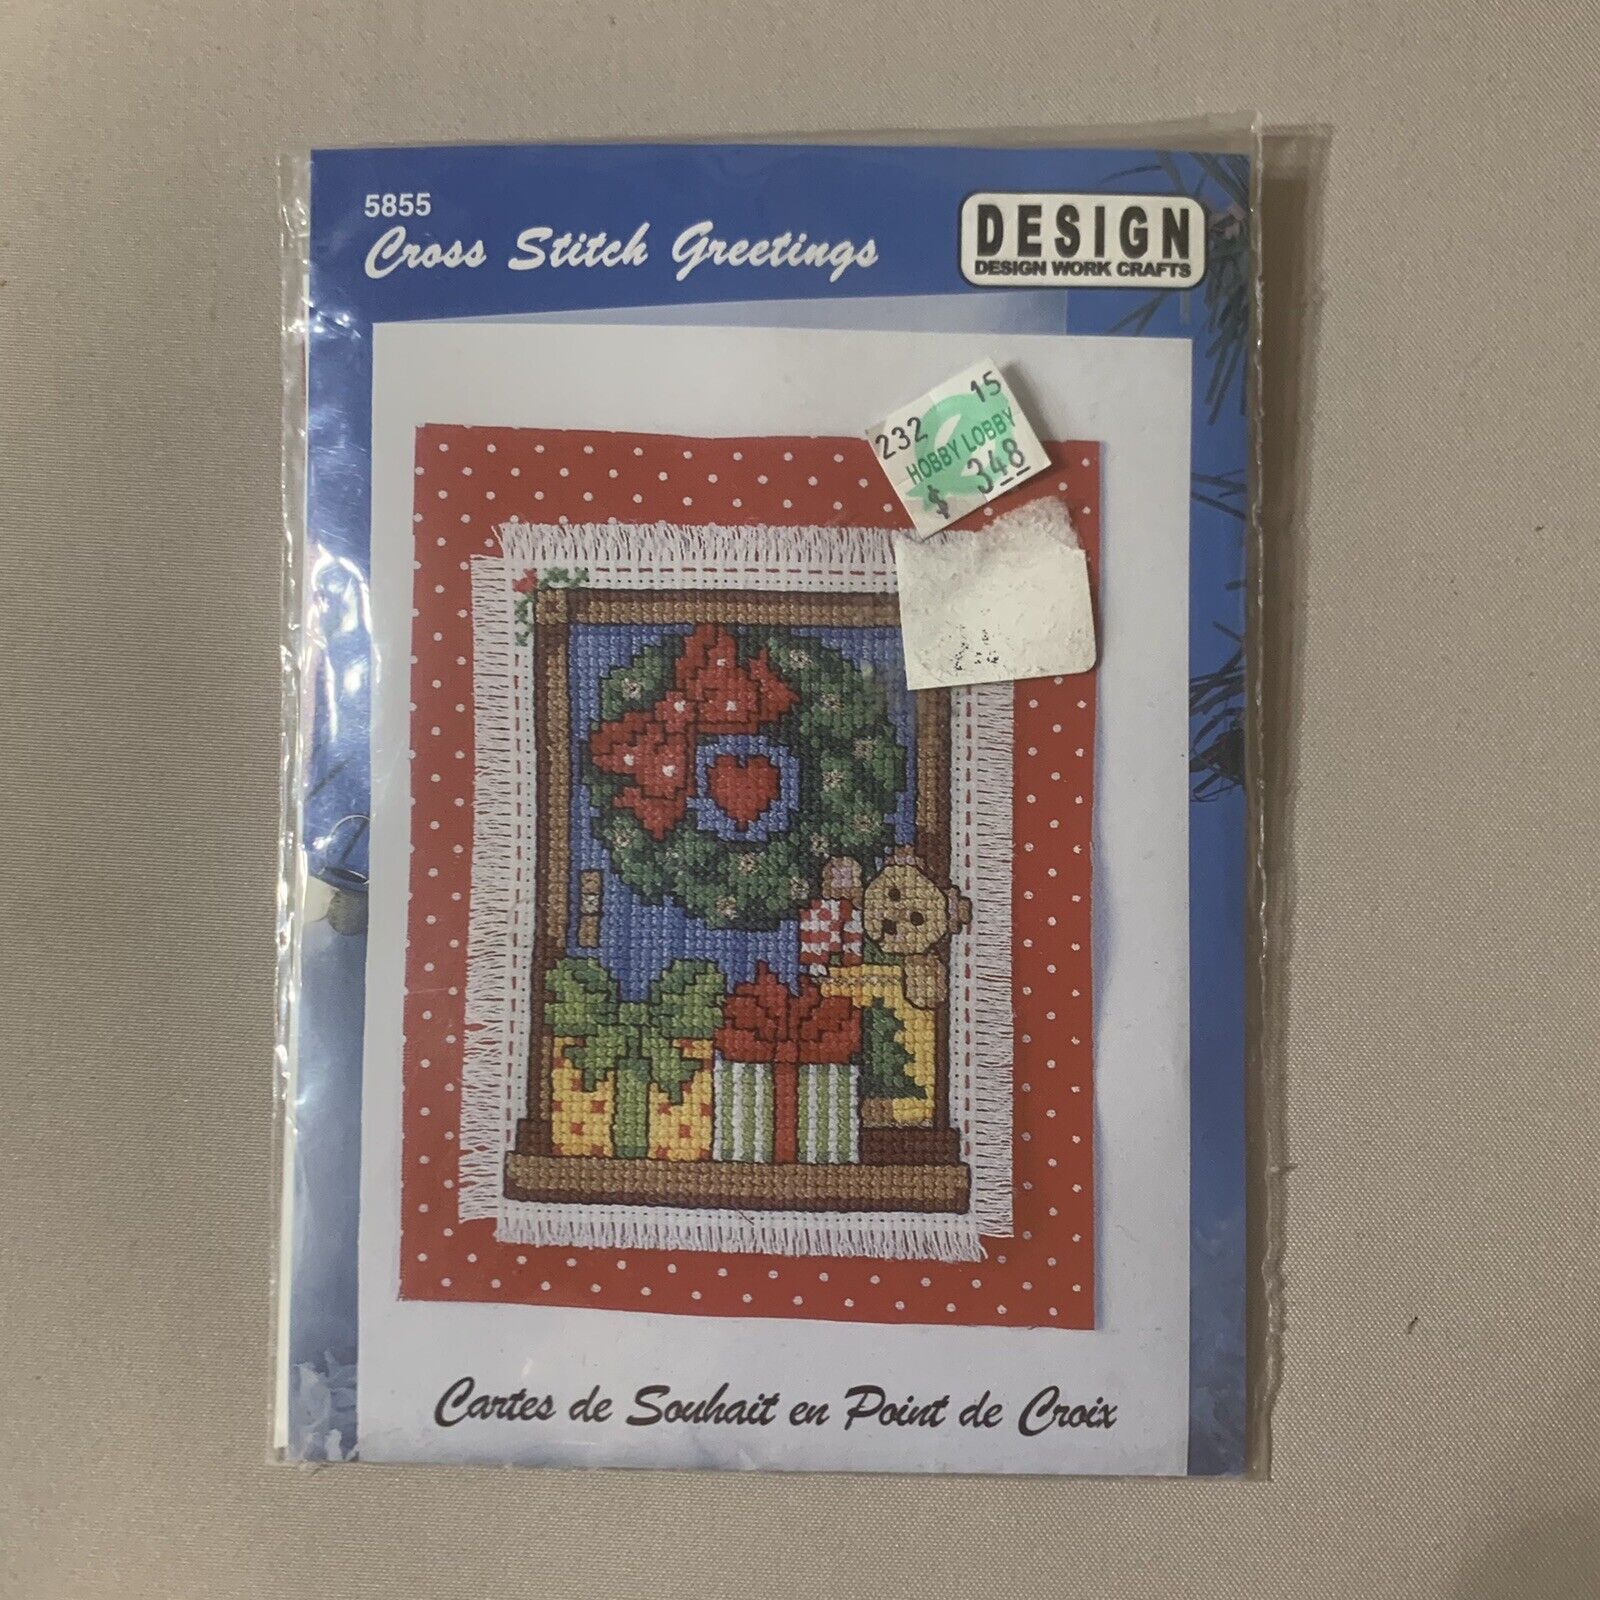 Cross Stitch Greetings 5855 by Design Works Teddy Bear Presents Wreath - $6.79